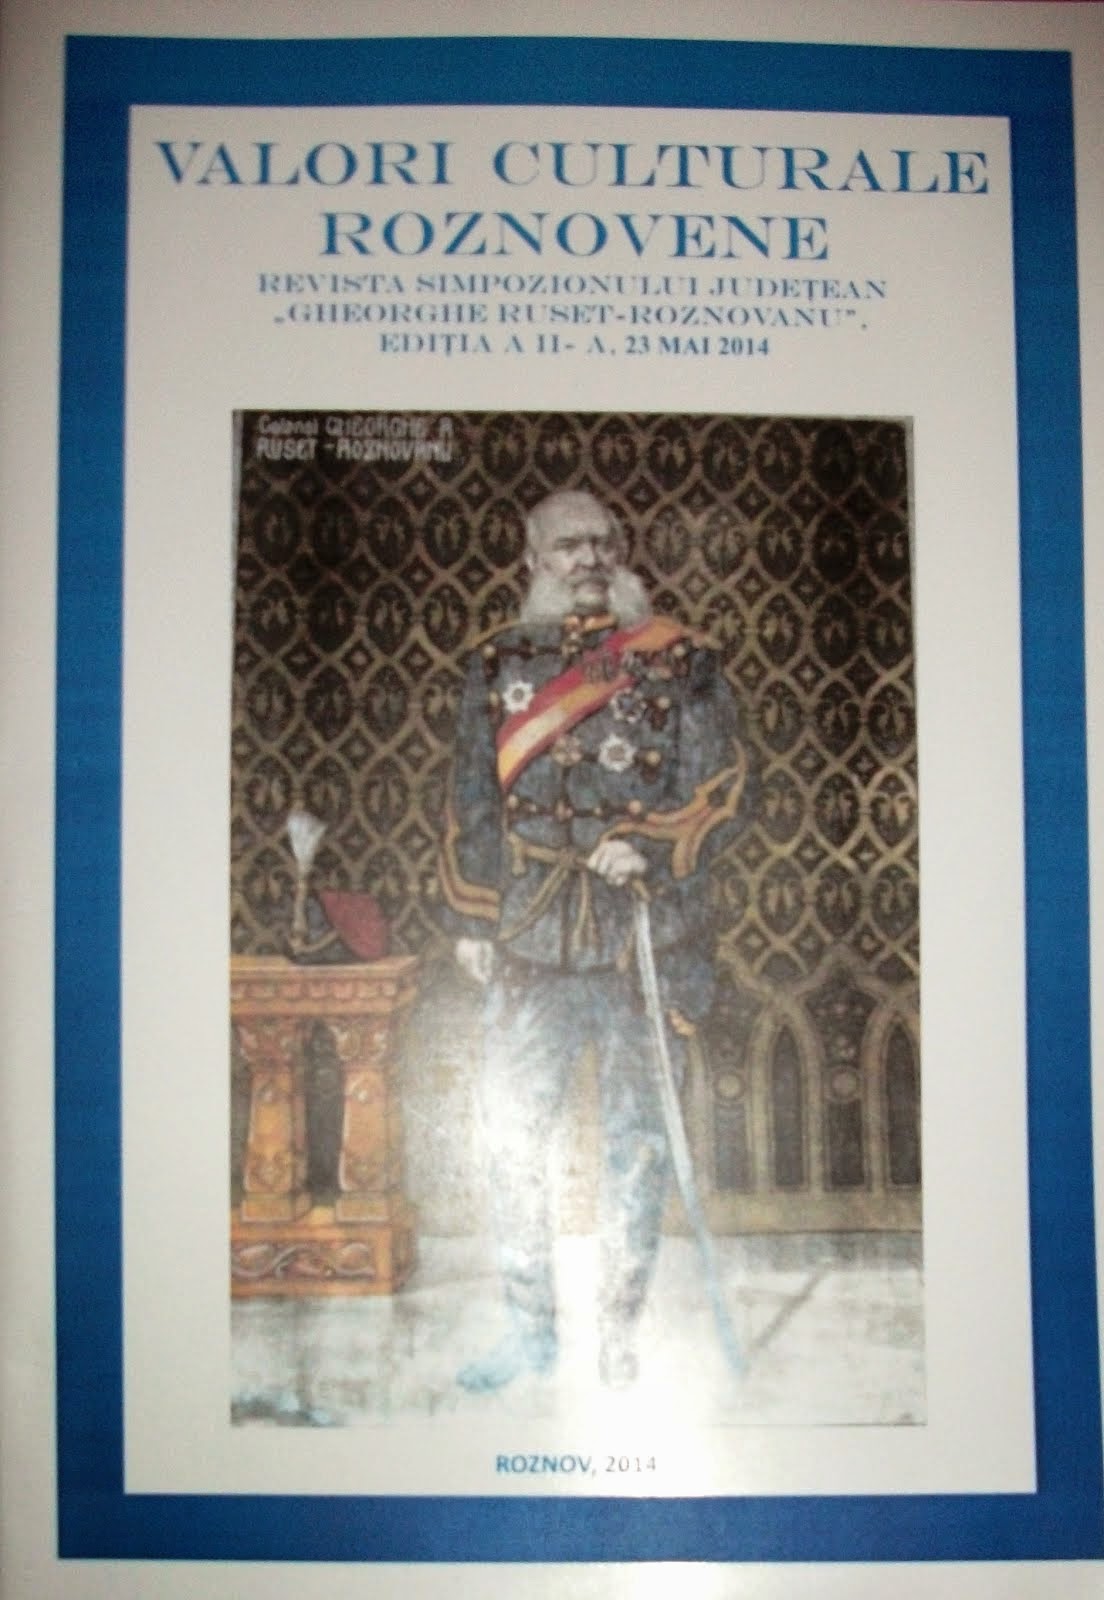 Revista Simpozionului Judeţean "Gheorghe Ruset-Roznovanu" - coperta 1